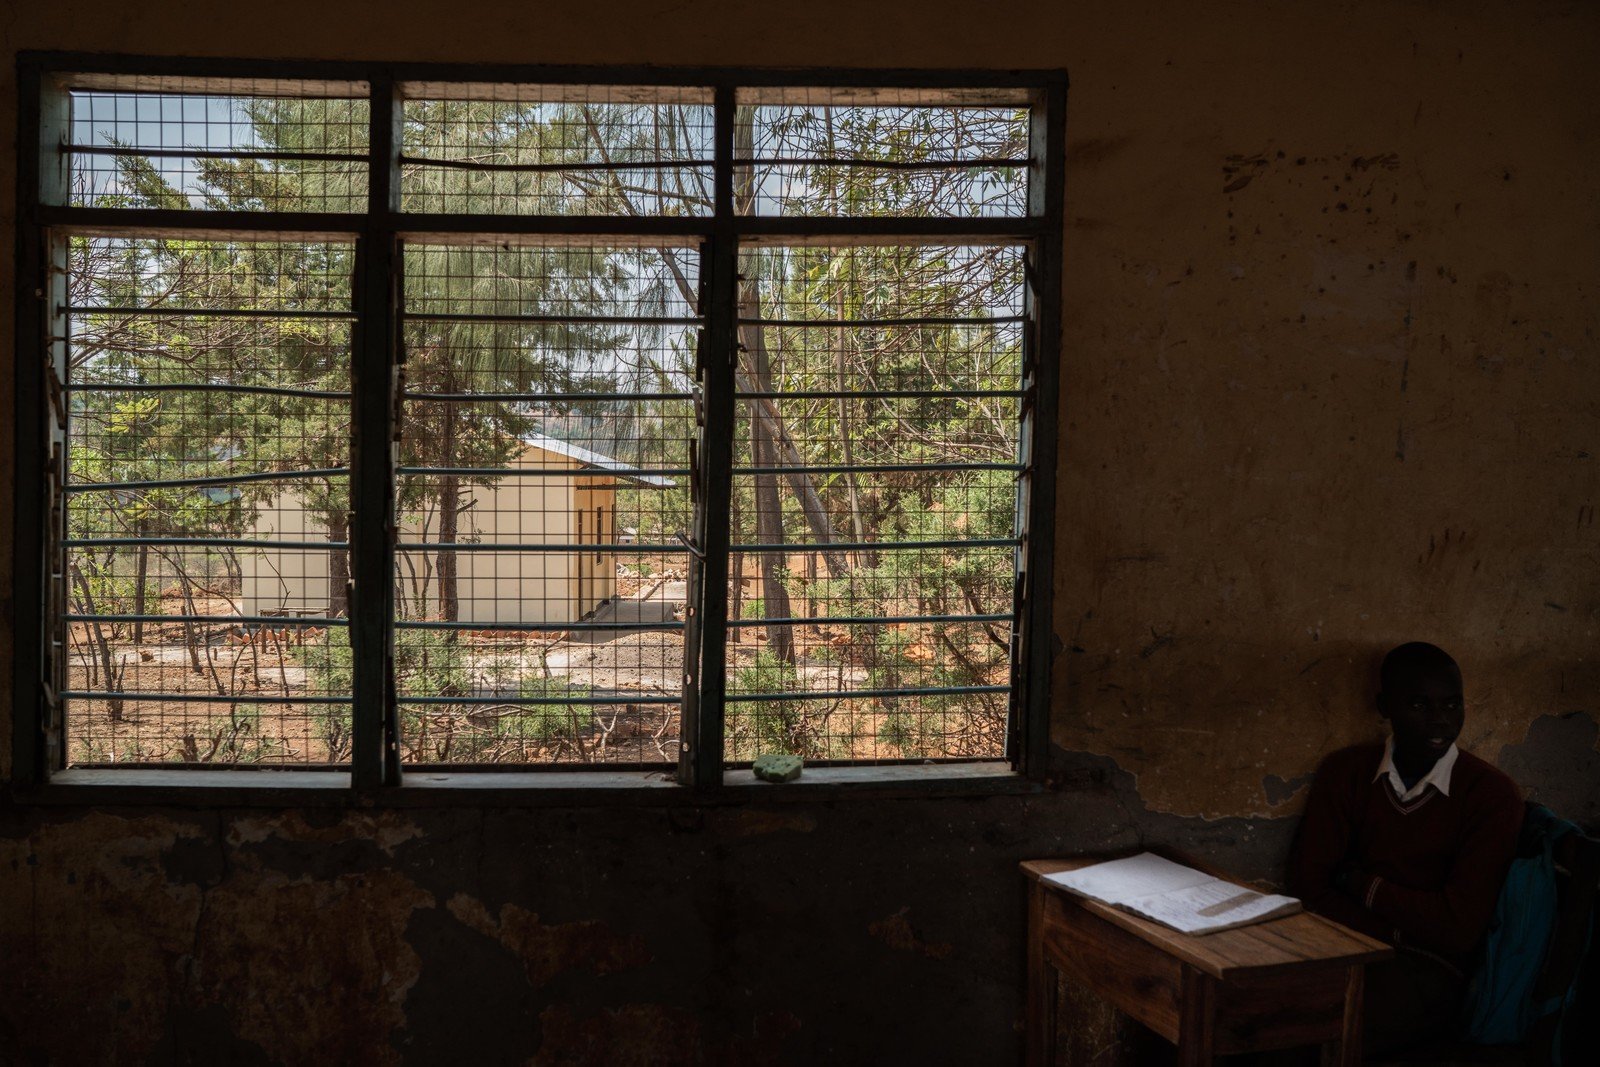 位于Rubanga的一间中学，以往课室数目严重不足。经过「发声达人」向政府官员反映后，官员派员兴建了新的课室。从旧课室的窗外，可以看到与新课室的对比。